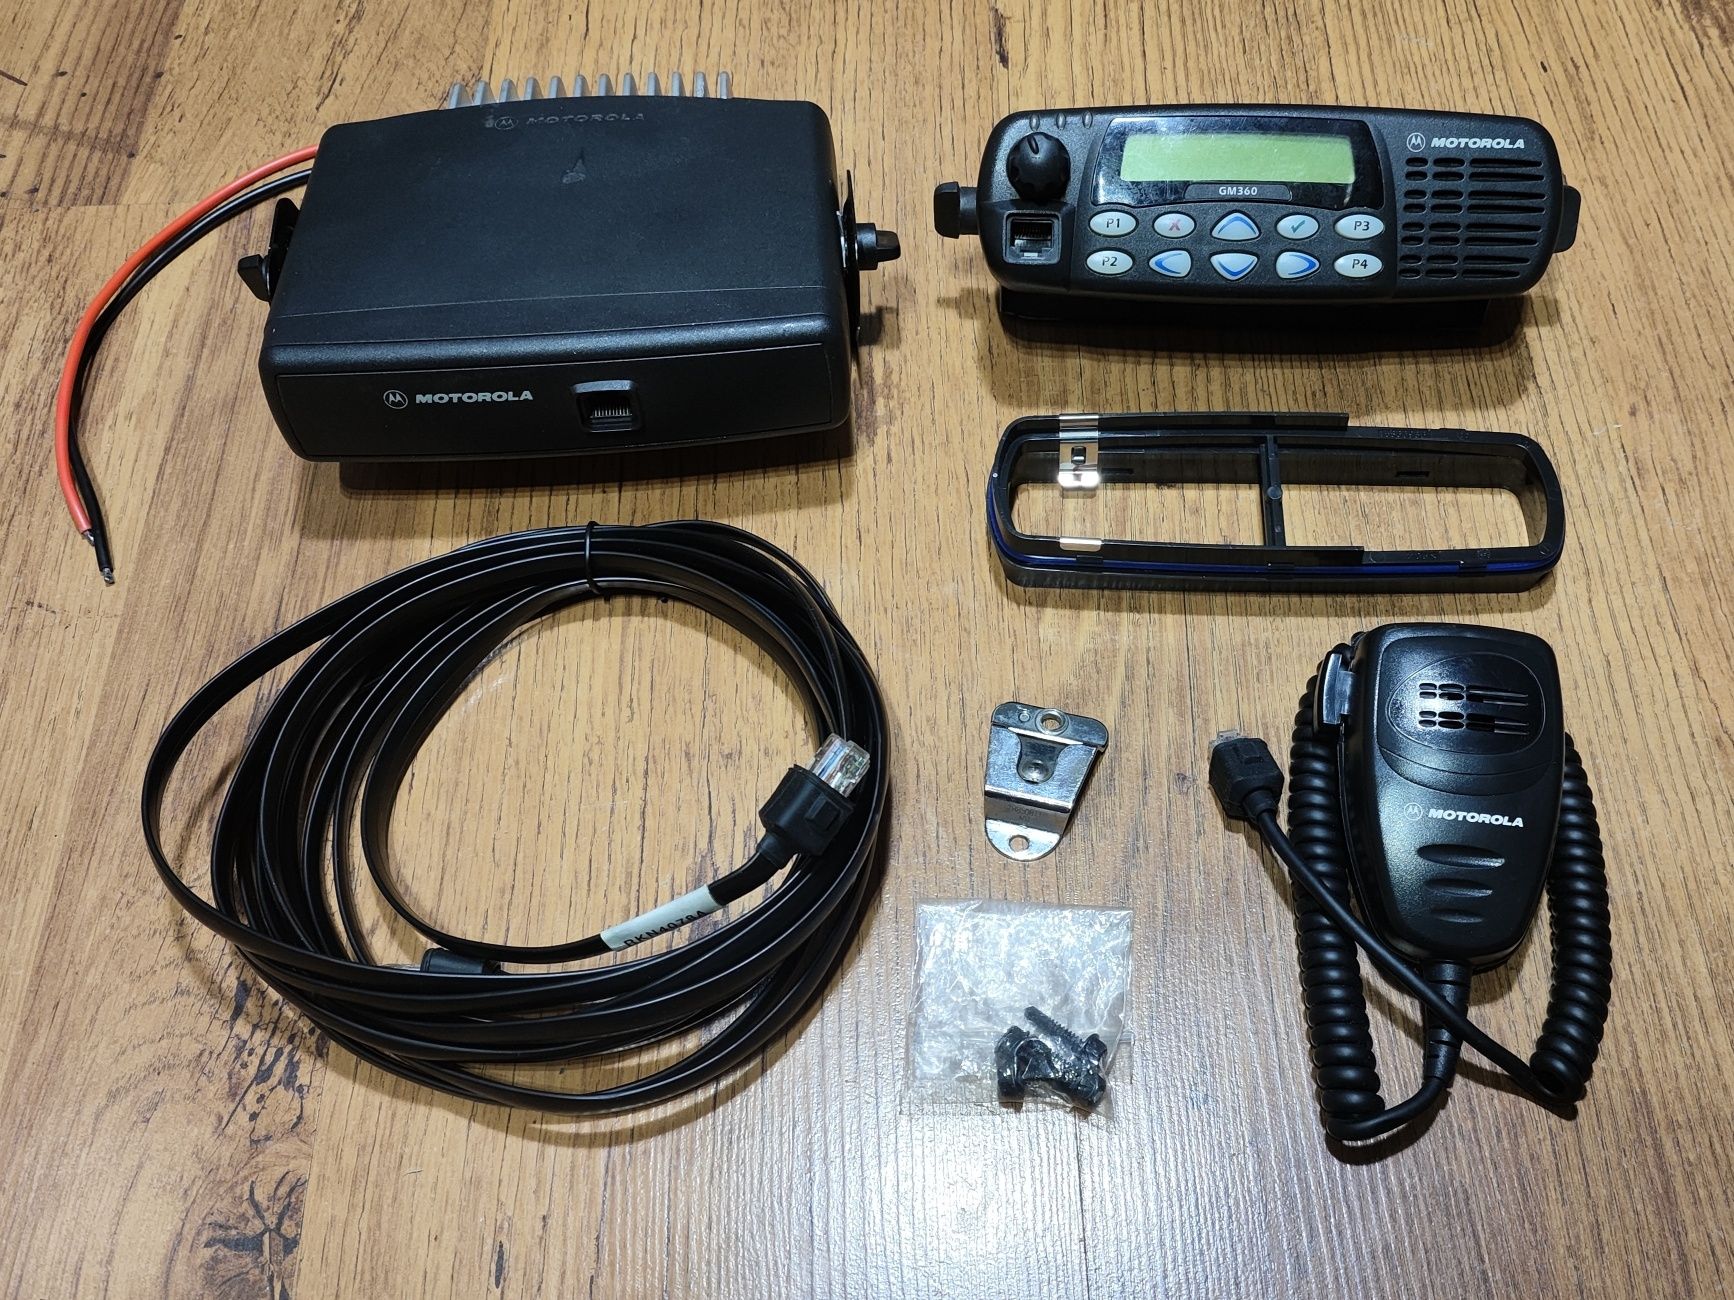 Motorola GM360 VHF z zestawem separacyjnym OSP PSP PKP Policja służby.